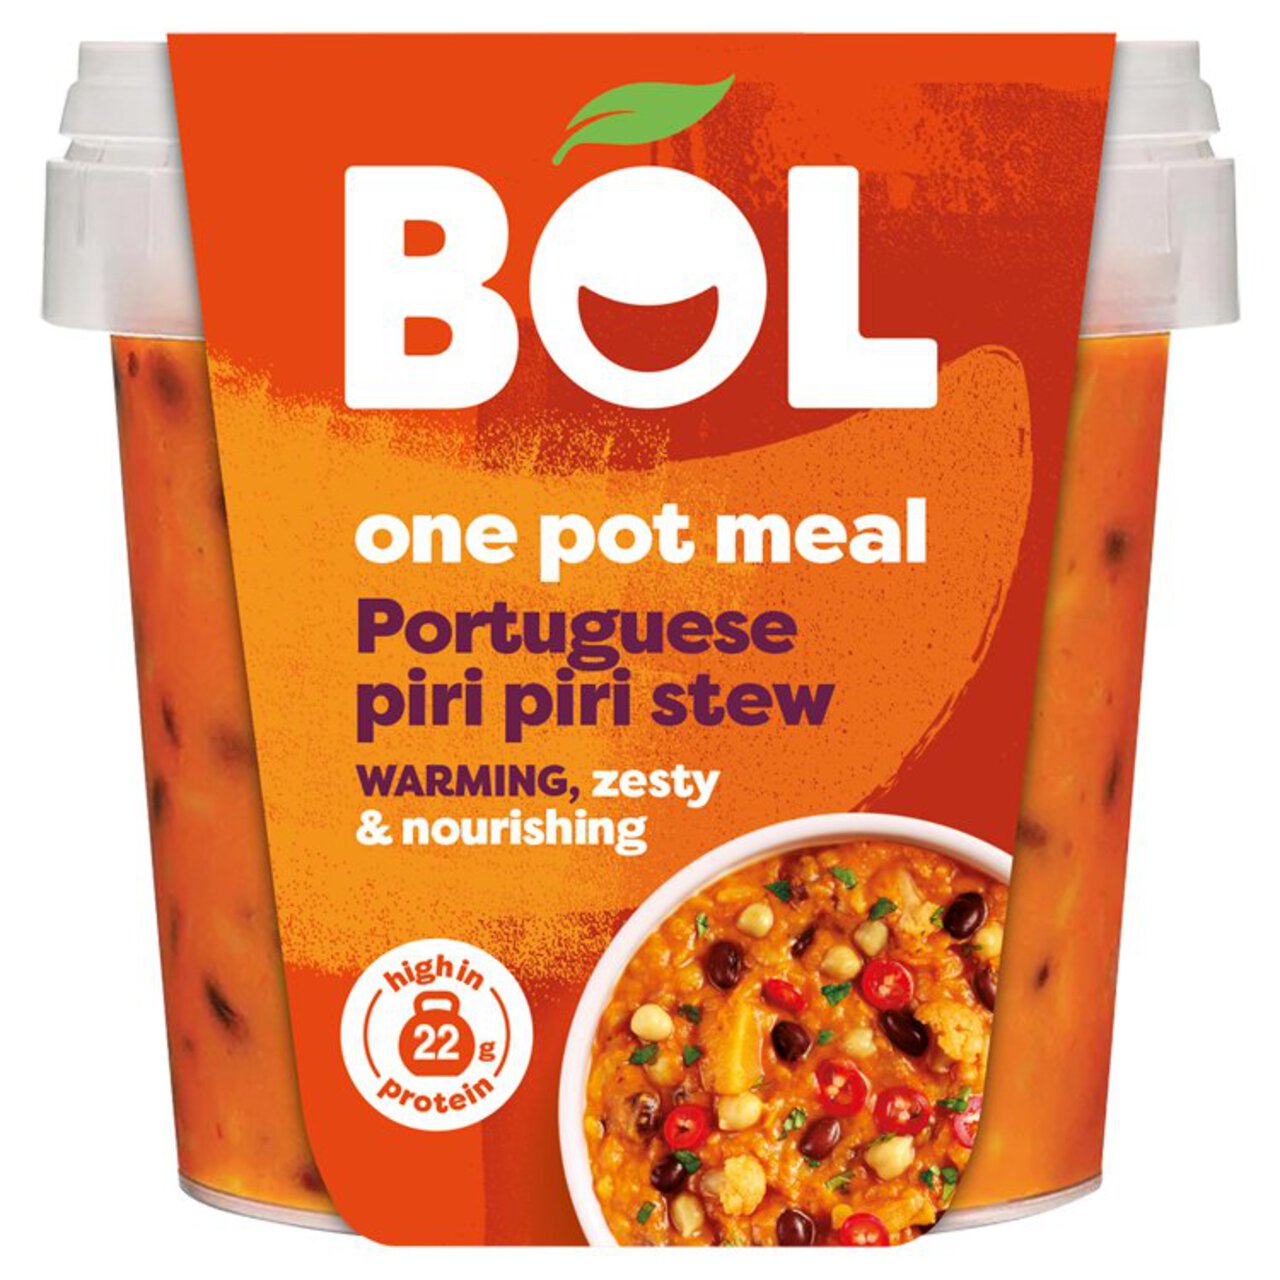 BOL Portuguese Piri Piri Stew One Pot Meal 450g